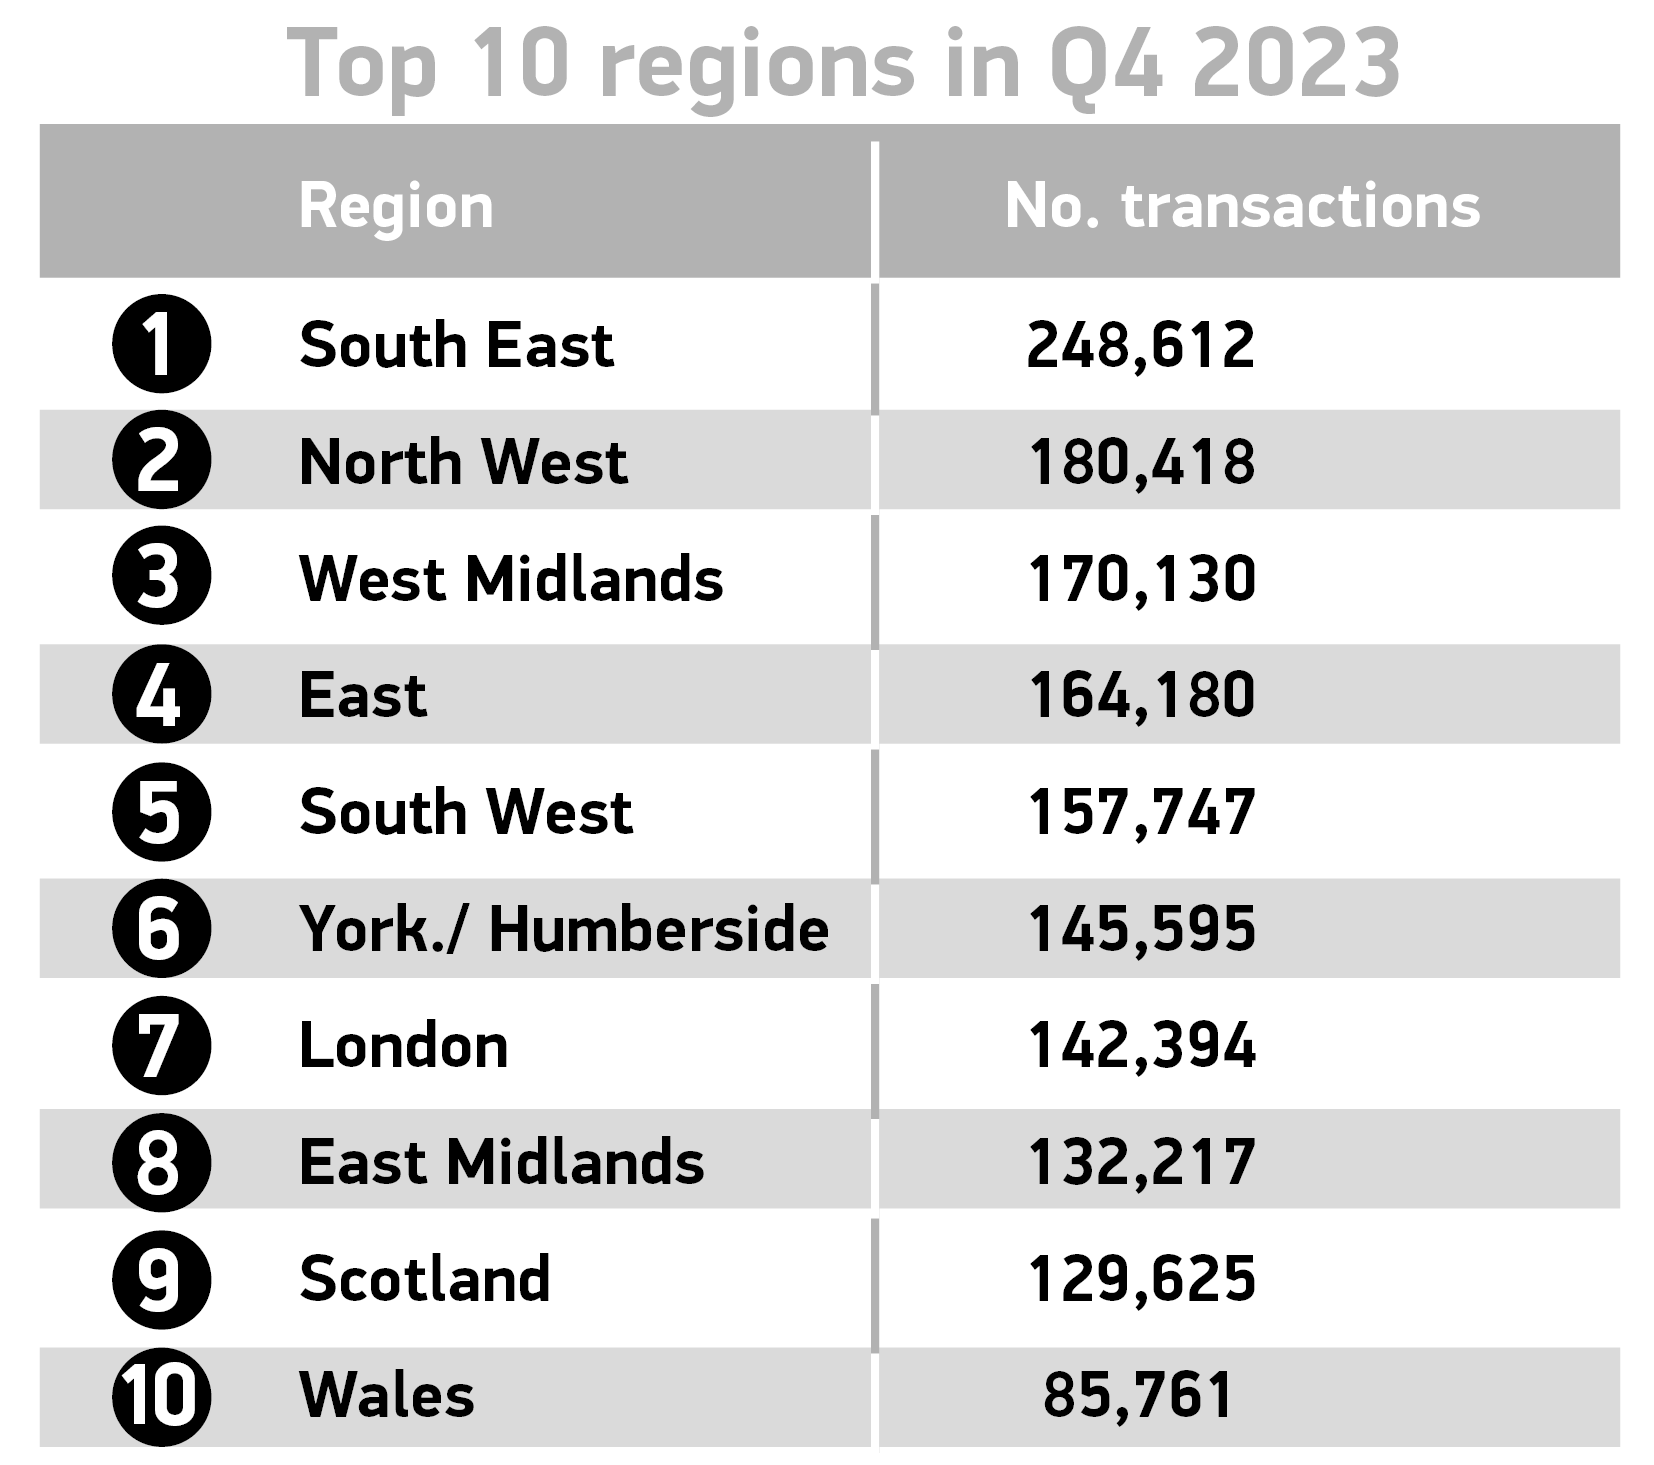 Top 10 regions Q4 2023